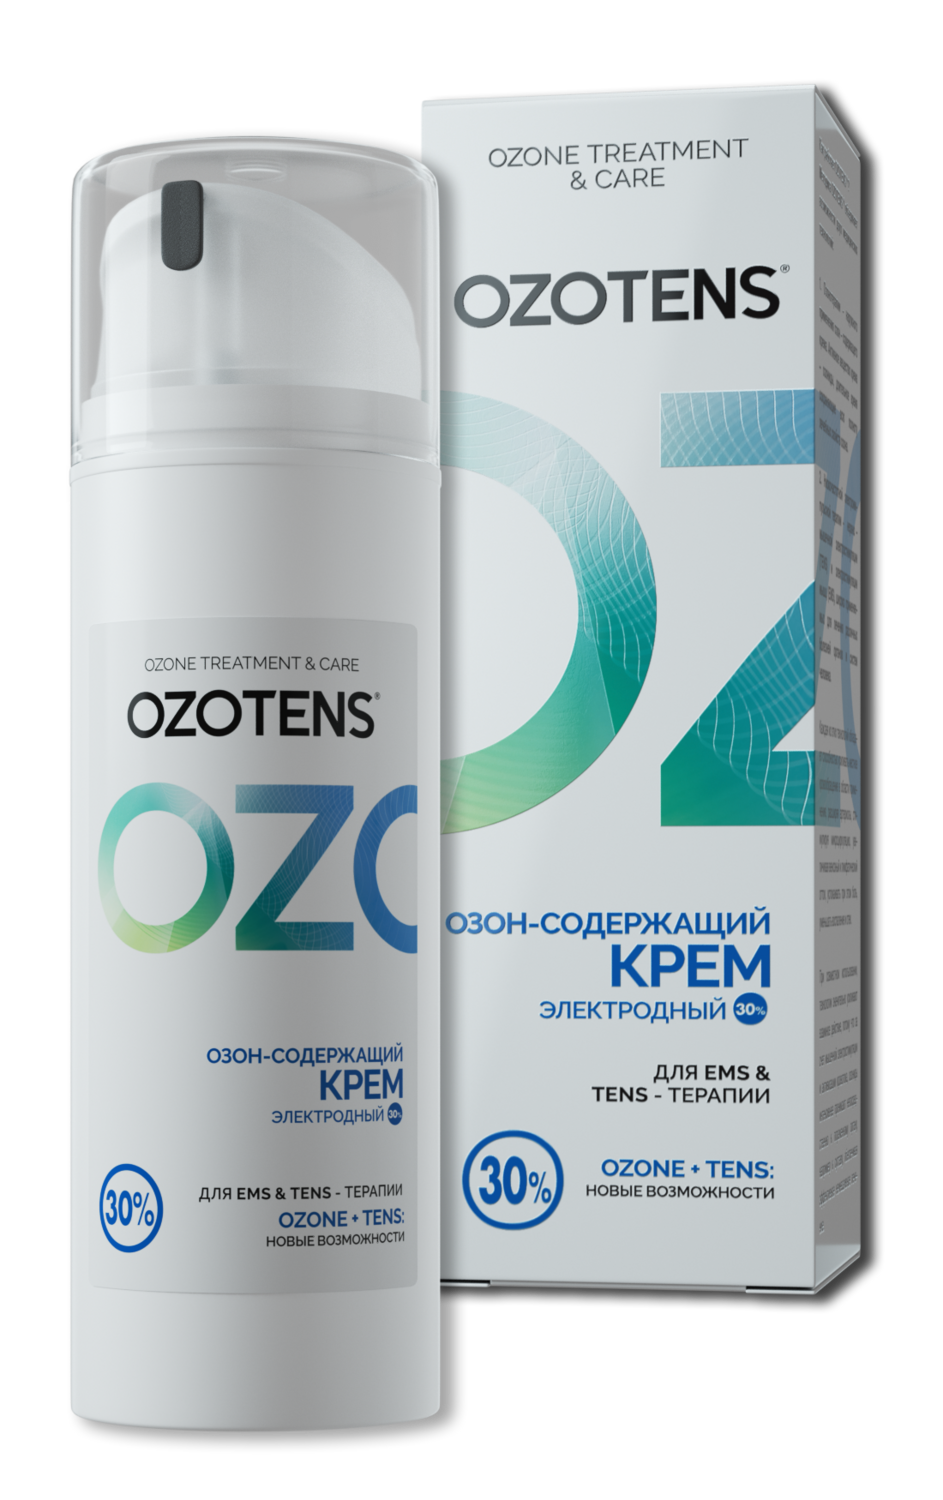 OZOTENS® Озонсодержащий электродный крем для EMS & TENS - терапии с аппаратами OZOTENS. 30%. (вакуум.флакон 150 мл.)
* только при покупке EMS&TENS-стимулятора RoovJoy